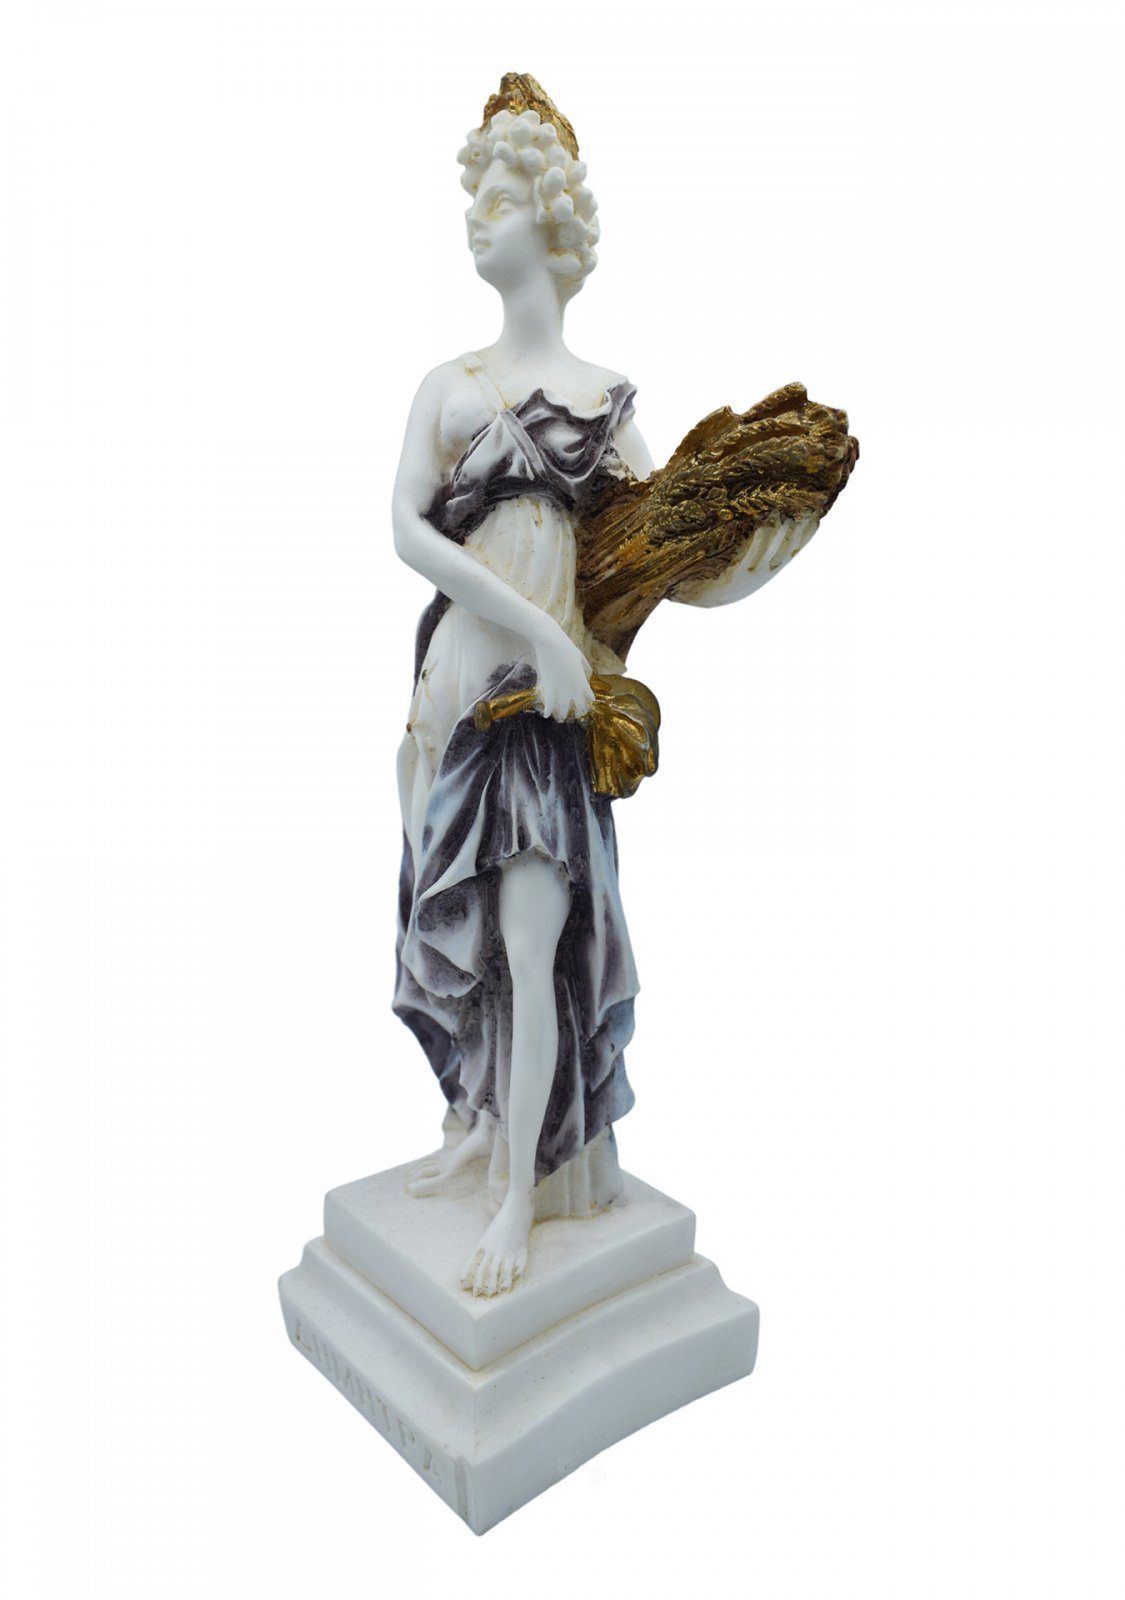 Demeter, Greek goddess of the harvest and agriculture, alabaster statue 